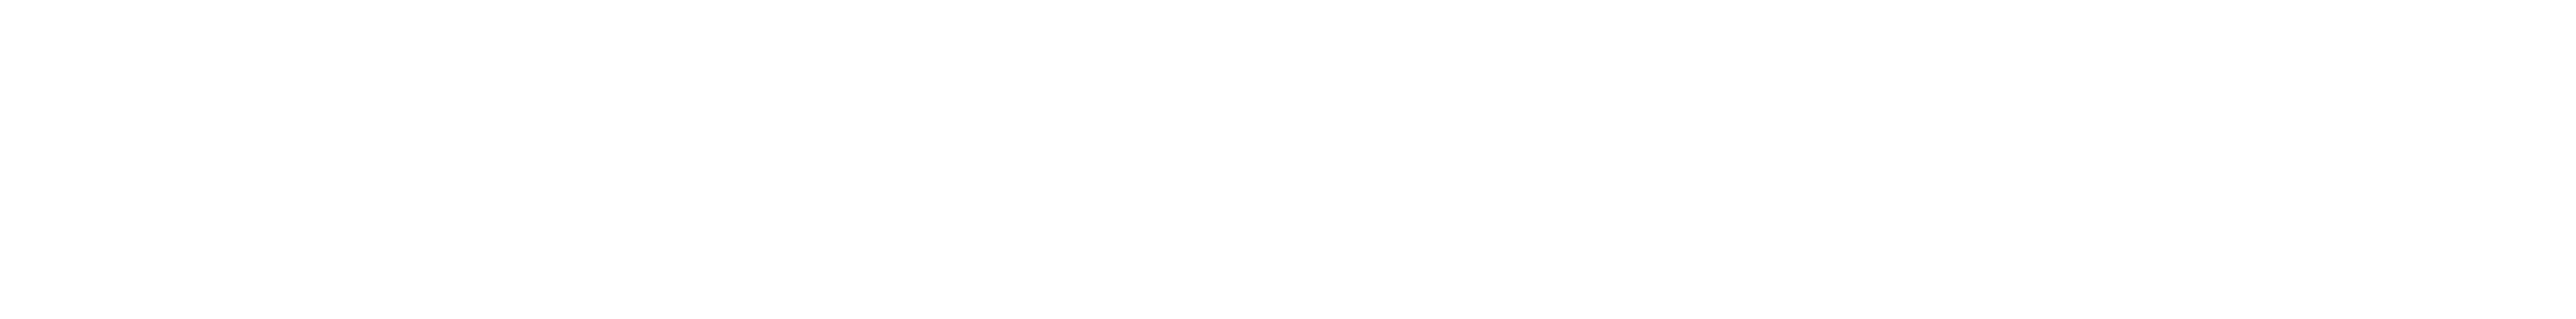 Schneeflocken â€“ Gartenpflege im Winter